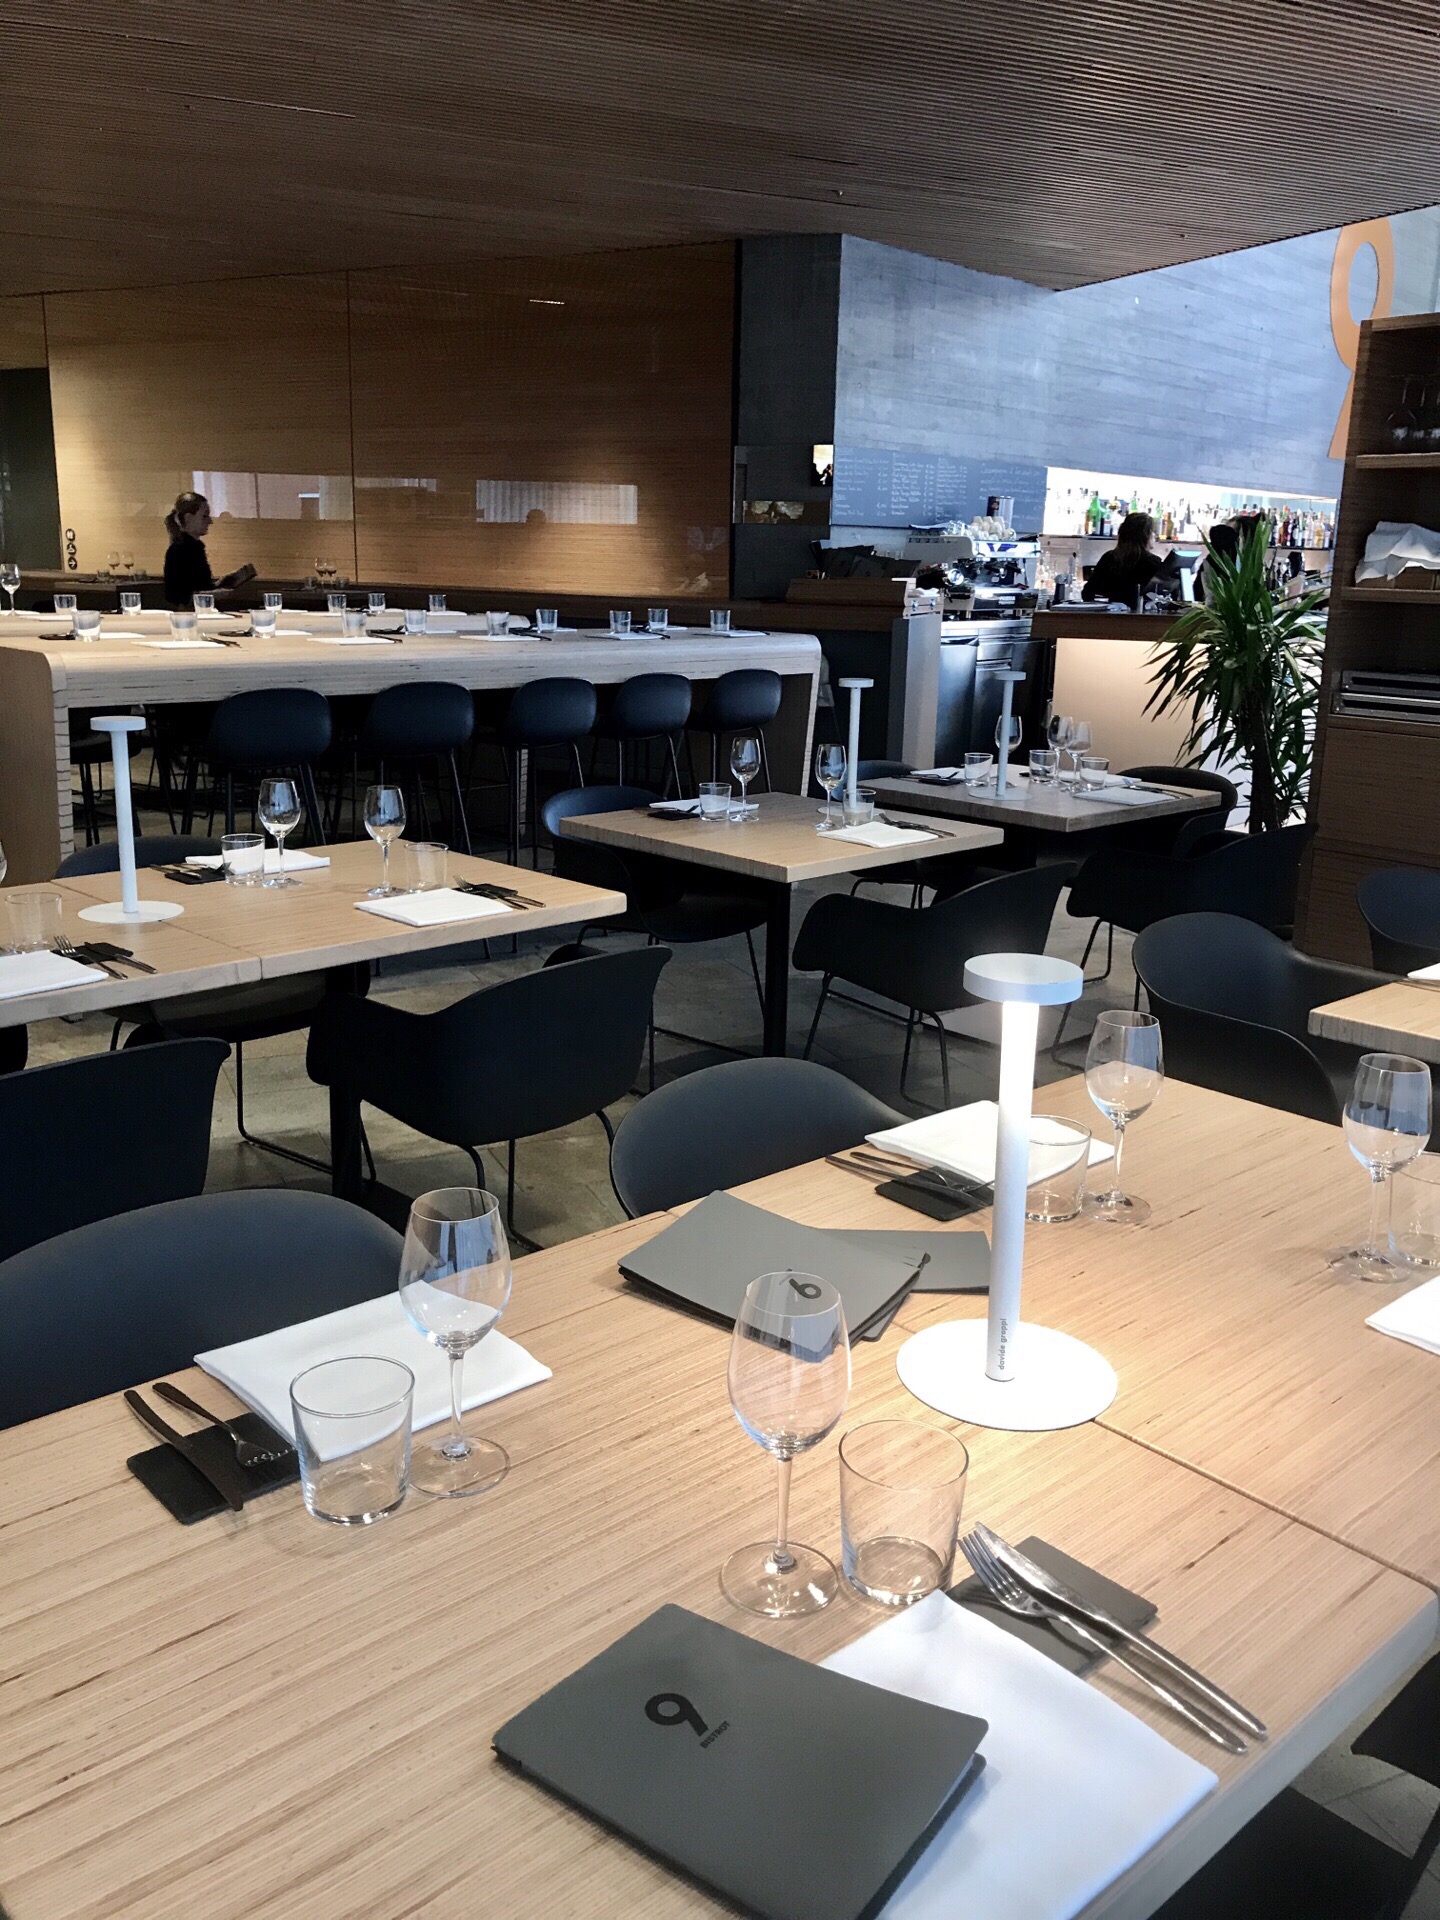 位于梅斯特市中心M9博物馆内的餐厅。2019年新开业，在意大利传统烹饪方式上有所创新，很多道菜都让人